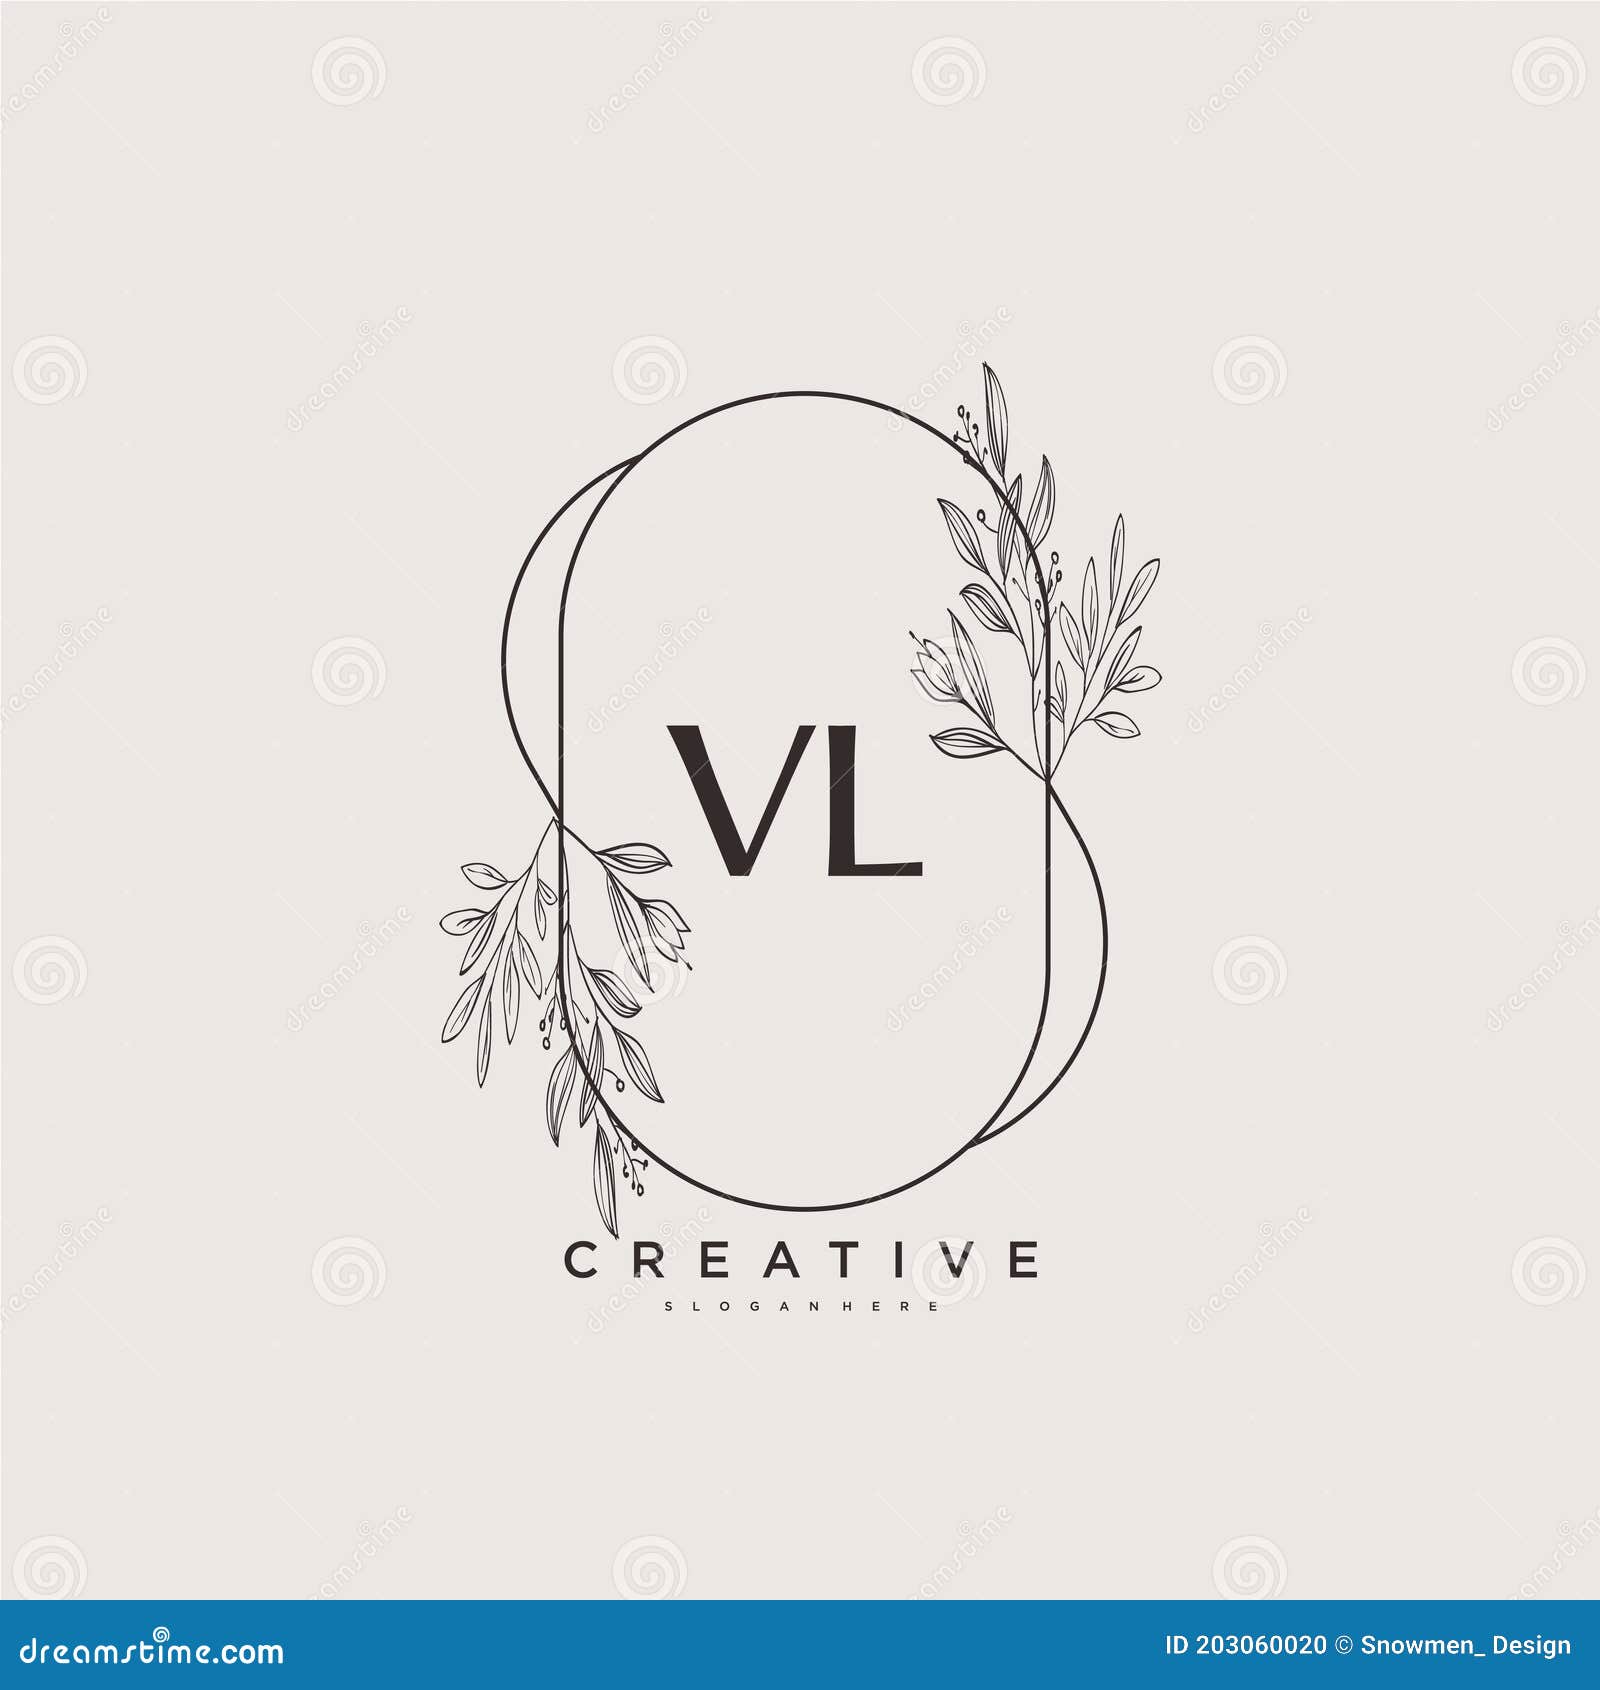 Vl v l watercolor letter logo design Royalty Free Vector